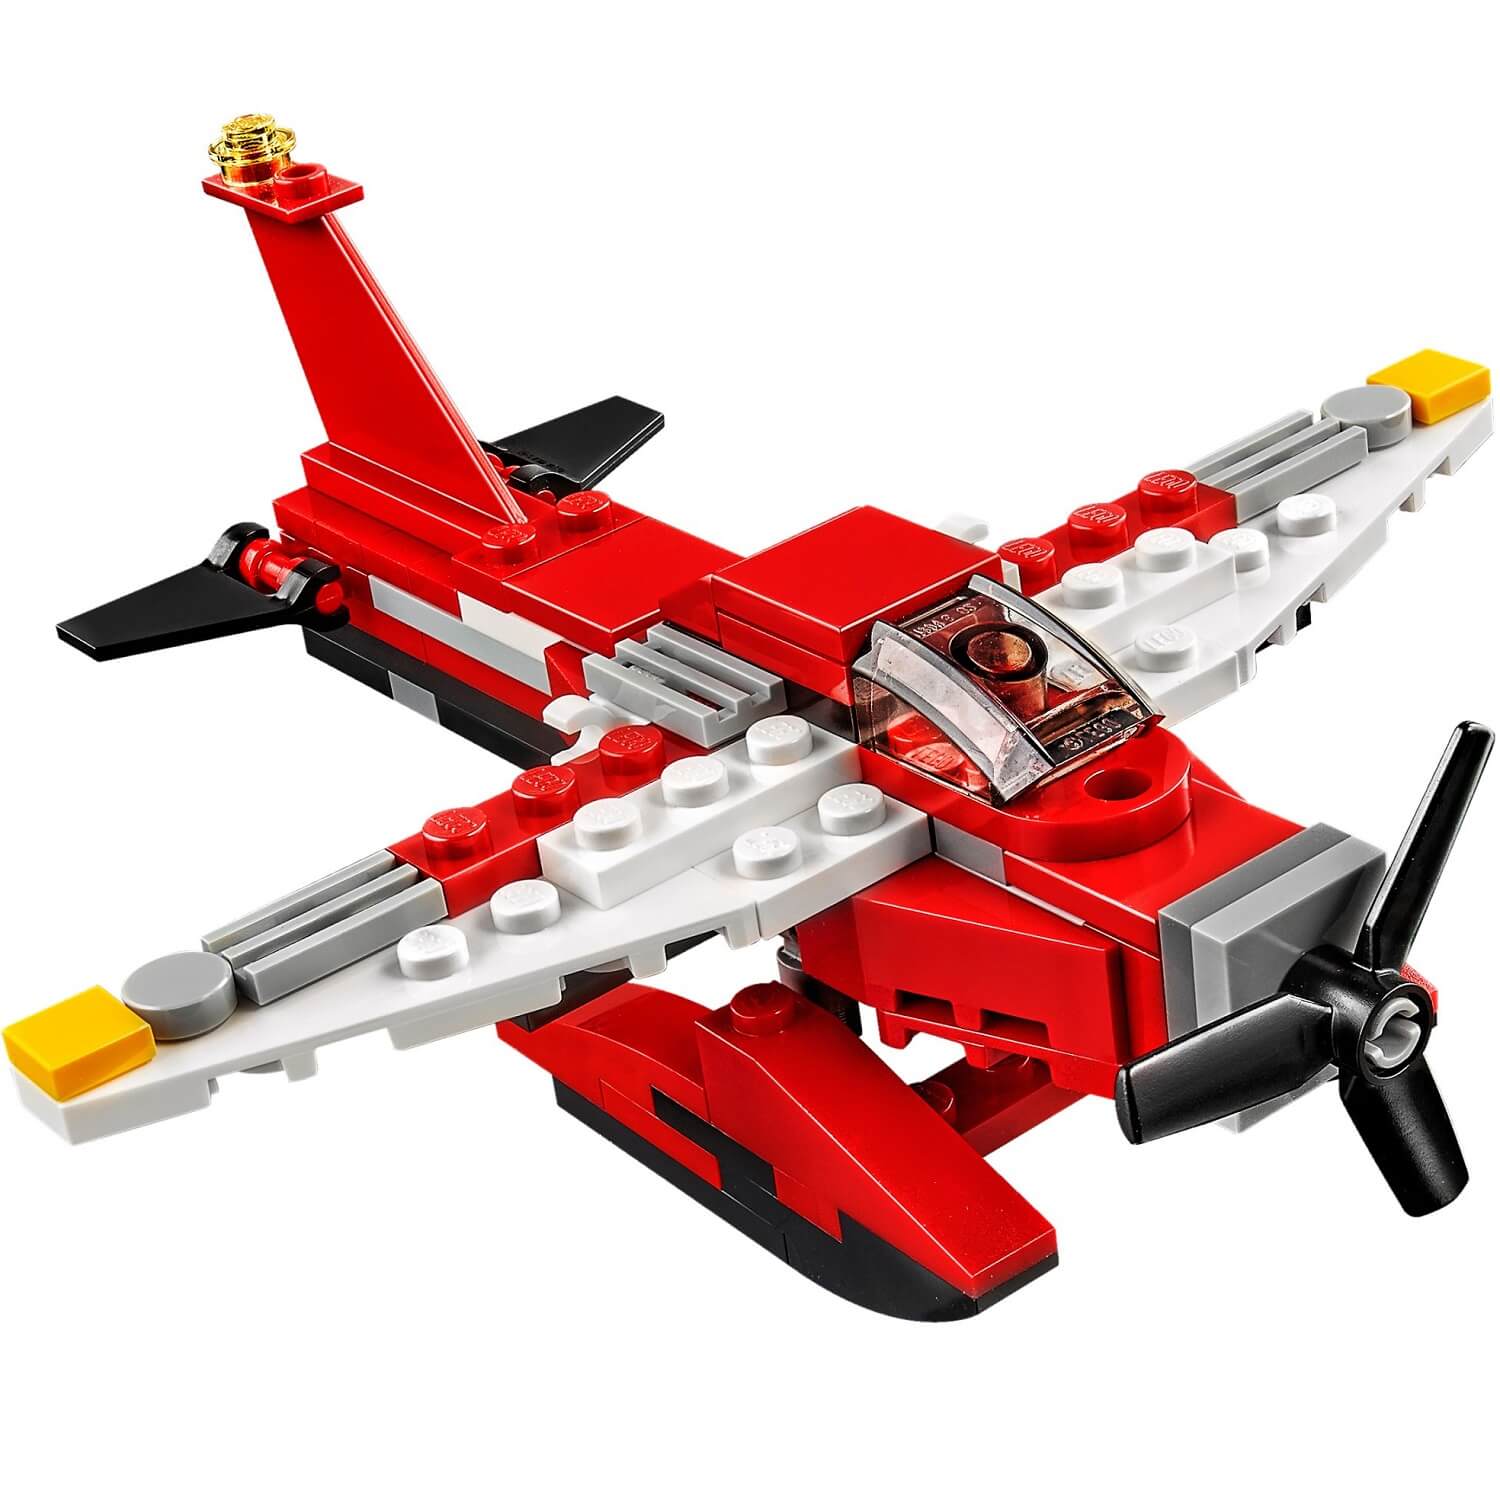 Estrella aerea ( Lego 31057 ) imagen b